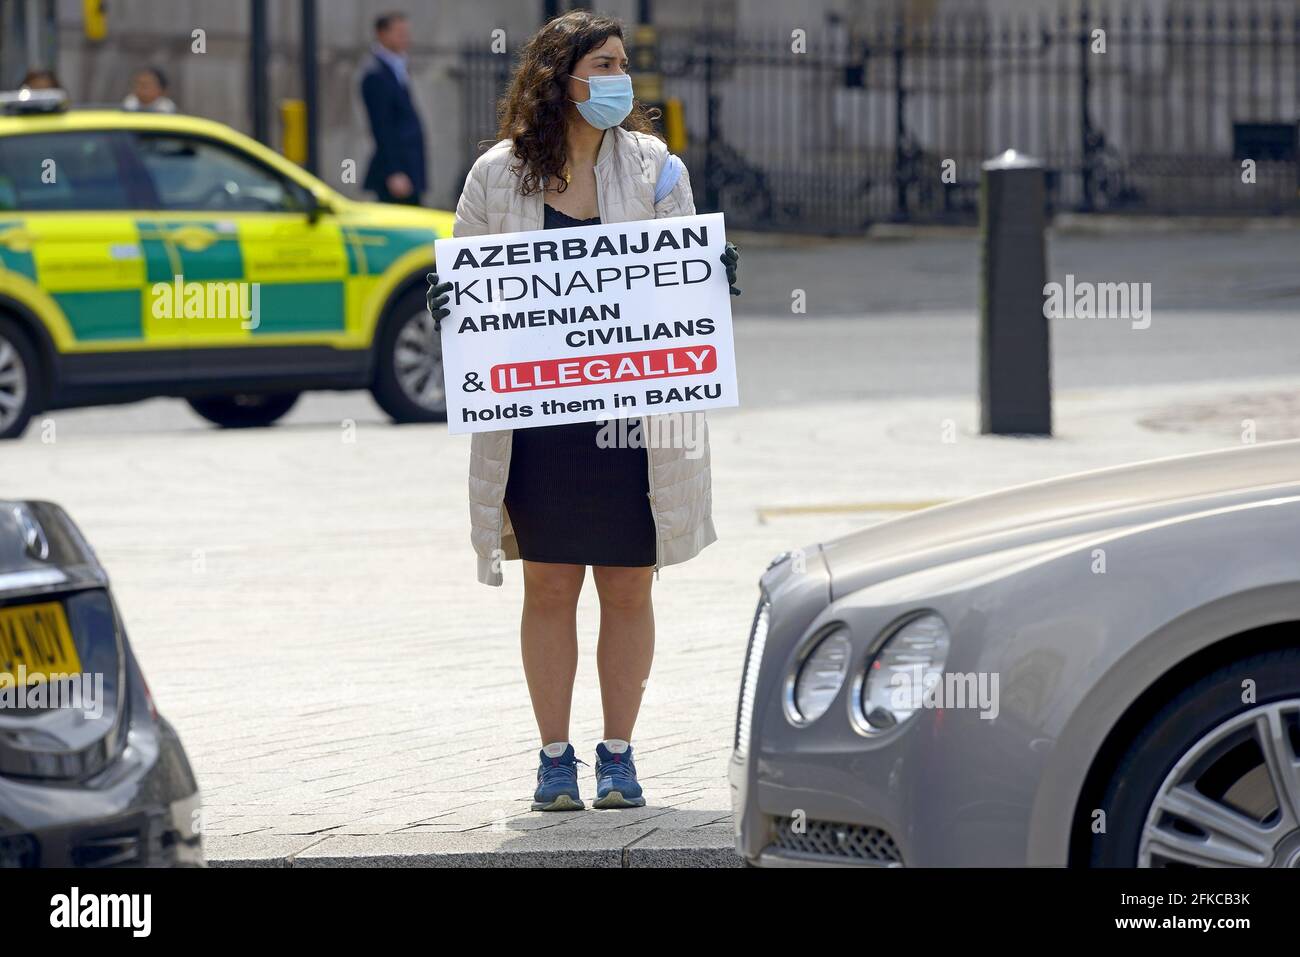 Londres, Royaume-Uni. Avril 30 2021: Les manifestants de Trafalgar Square campagne contre le traitement des prisonniers de guerre et des civils arméniens par les forces azerbaïdjanaises crédit: Phil Robinson/Alay Live News Banque D'Images